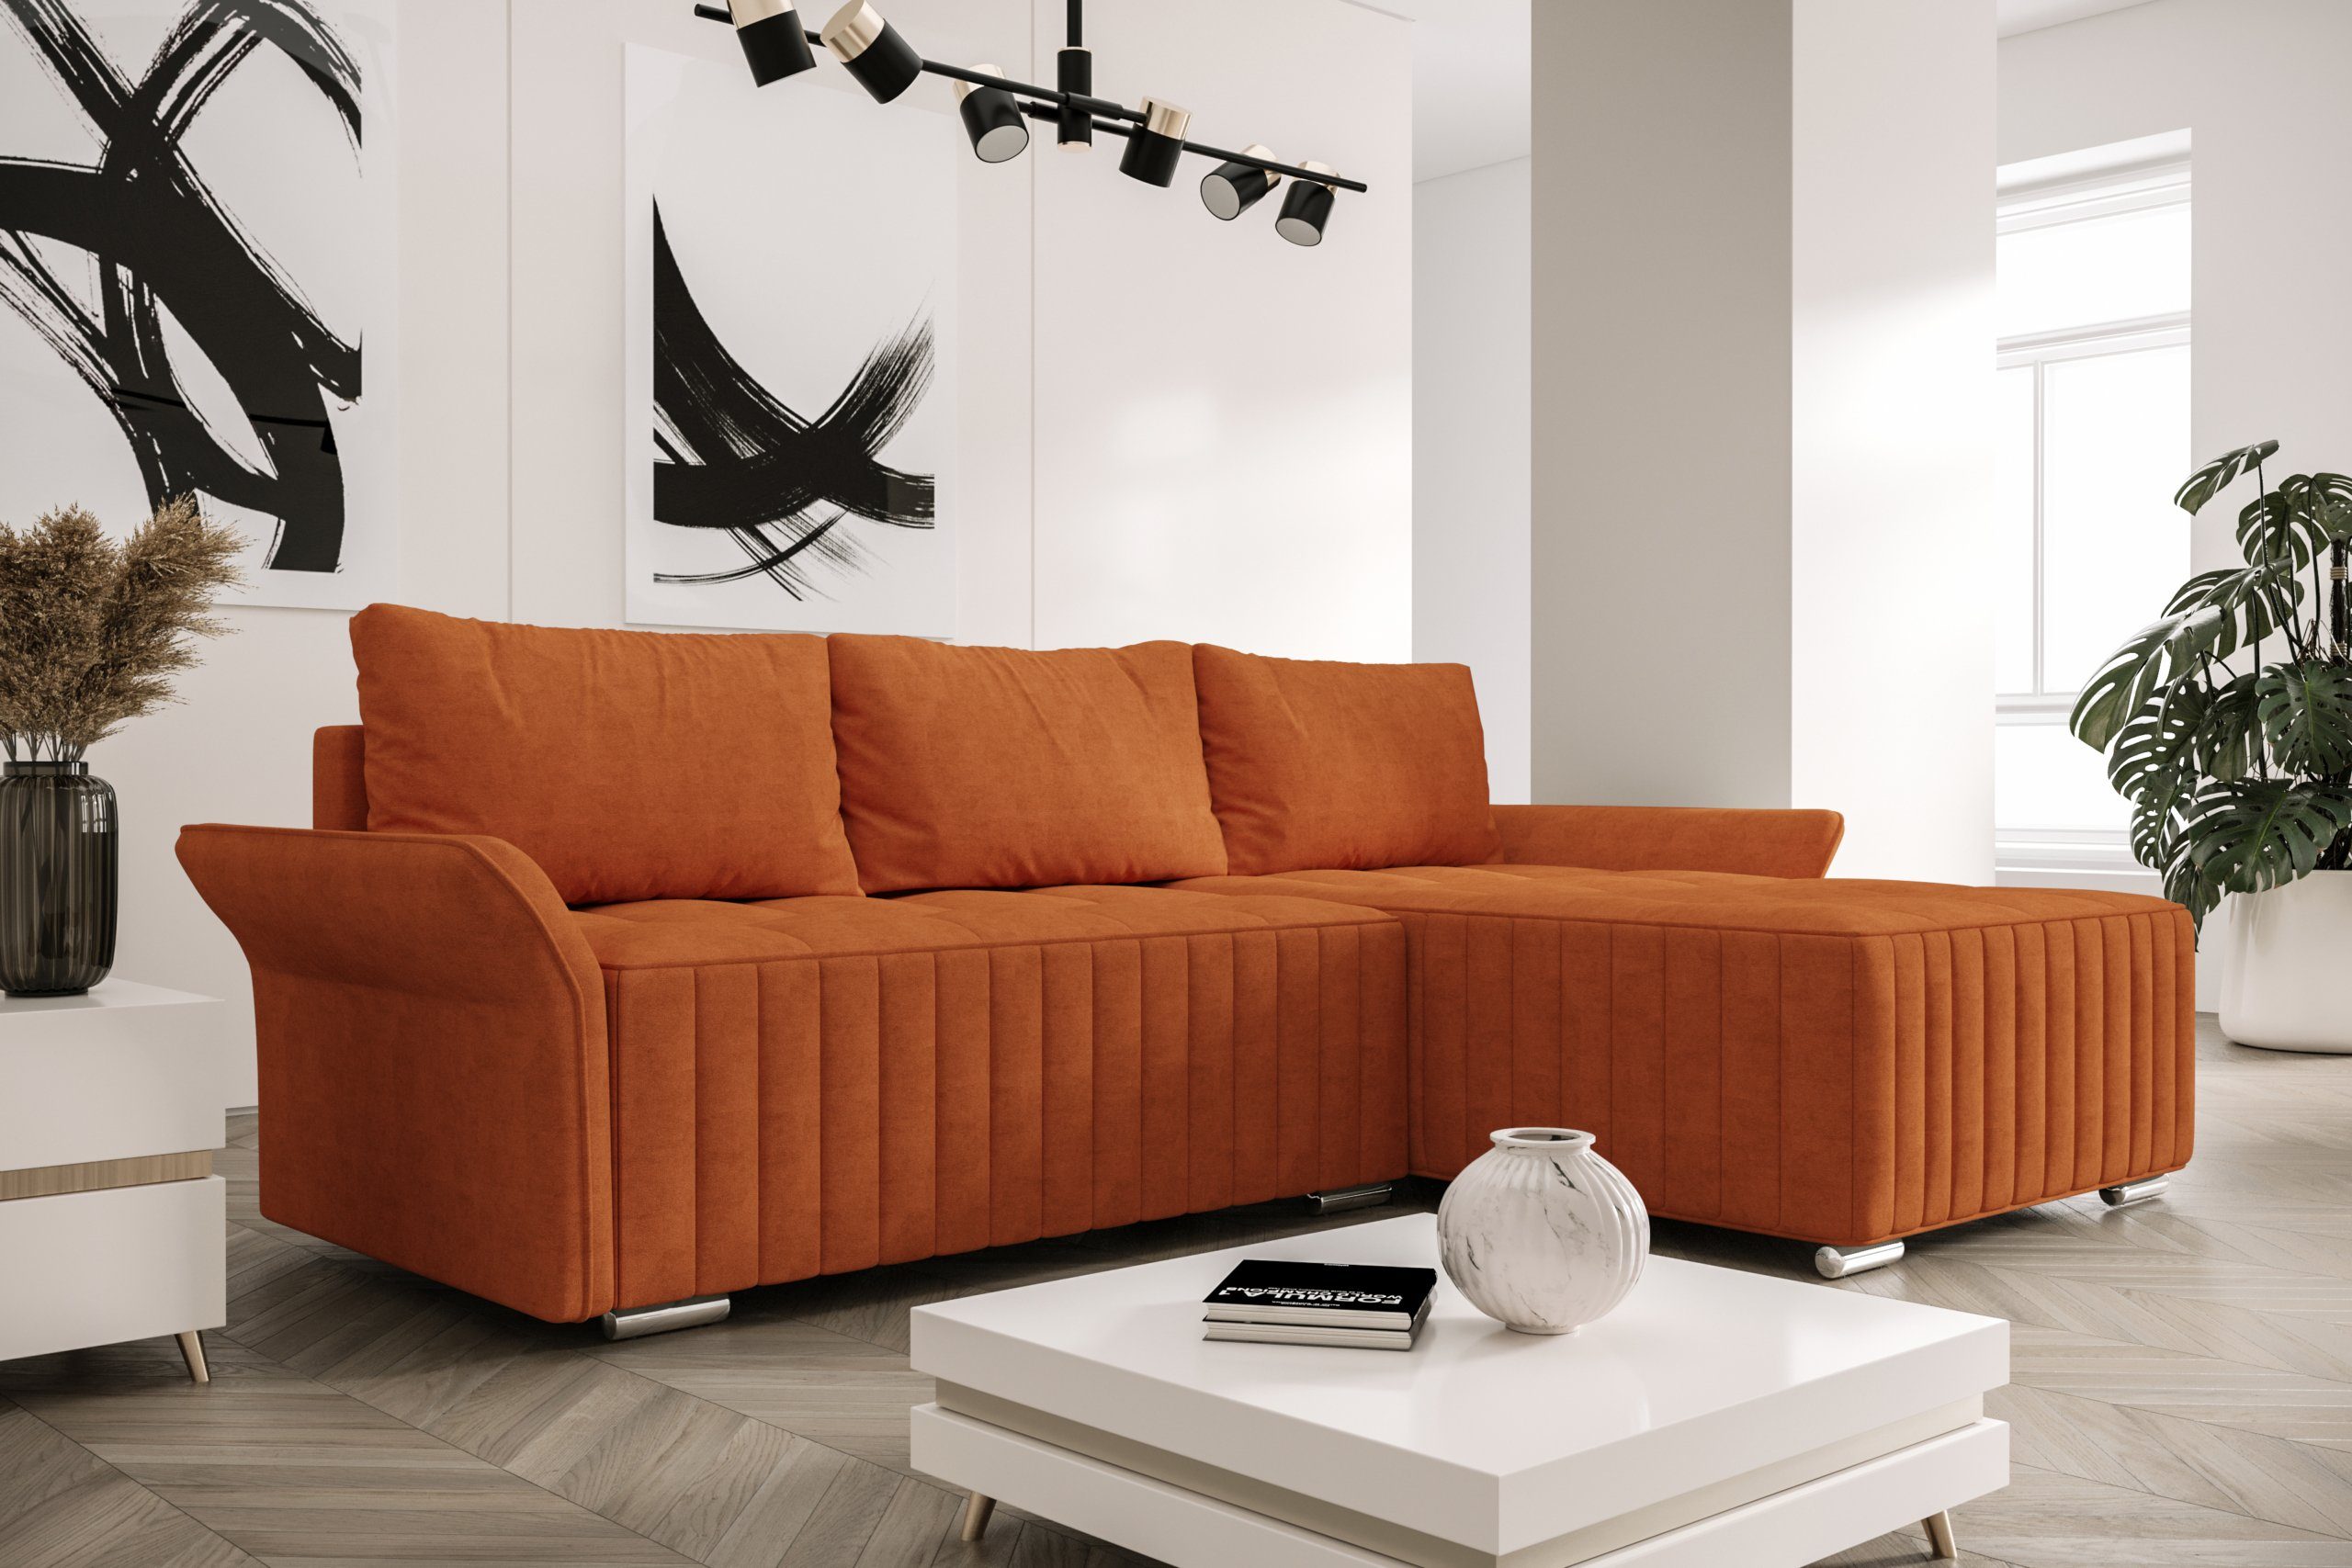 ROYAL24_MARKT Ecksofa Elegante Komfortzone Moderne Ecksofas, Flexibles Wohn-Set, Moderner Stil, Ausklapp-Automat, Rückenkissen inklusive Orange